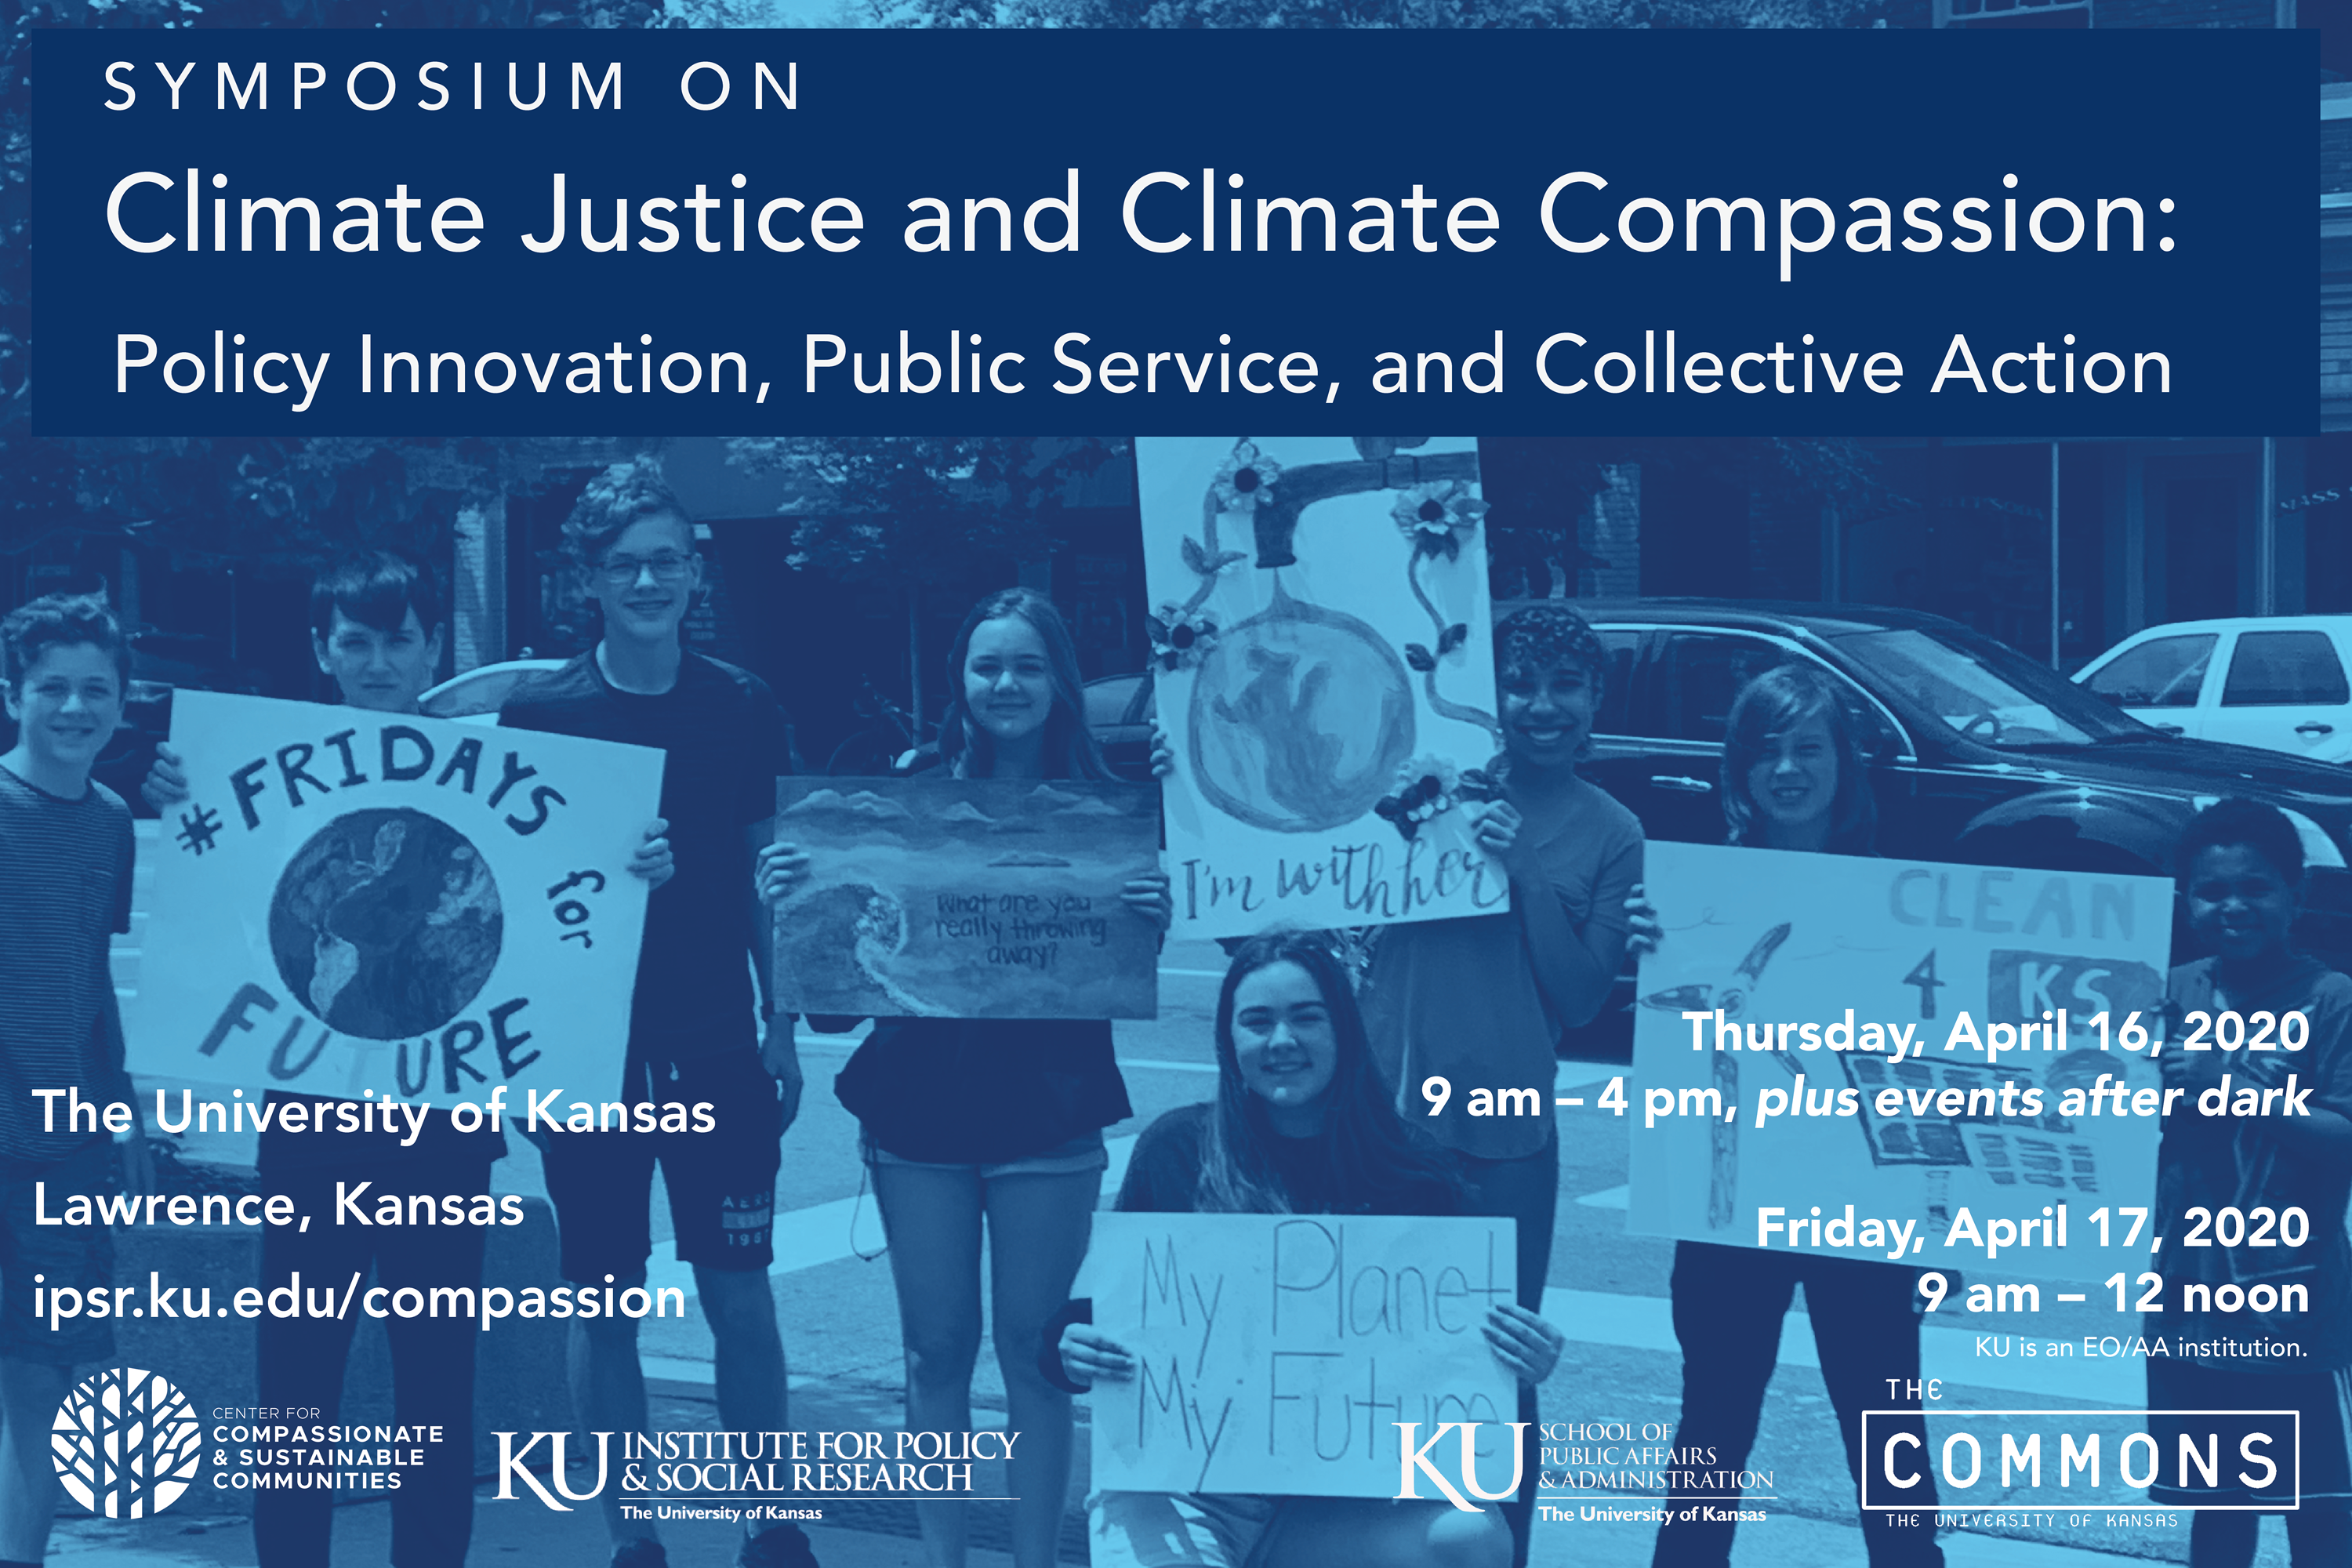 Climate Symposium - April 16, 2020